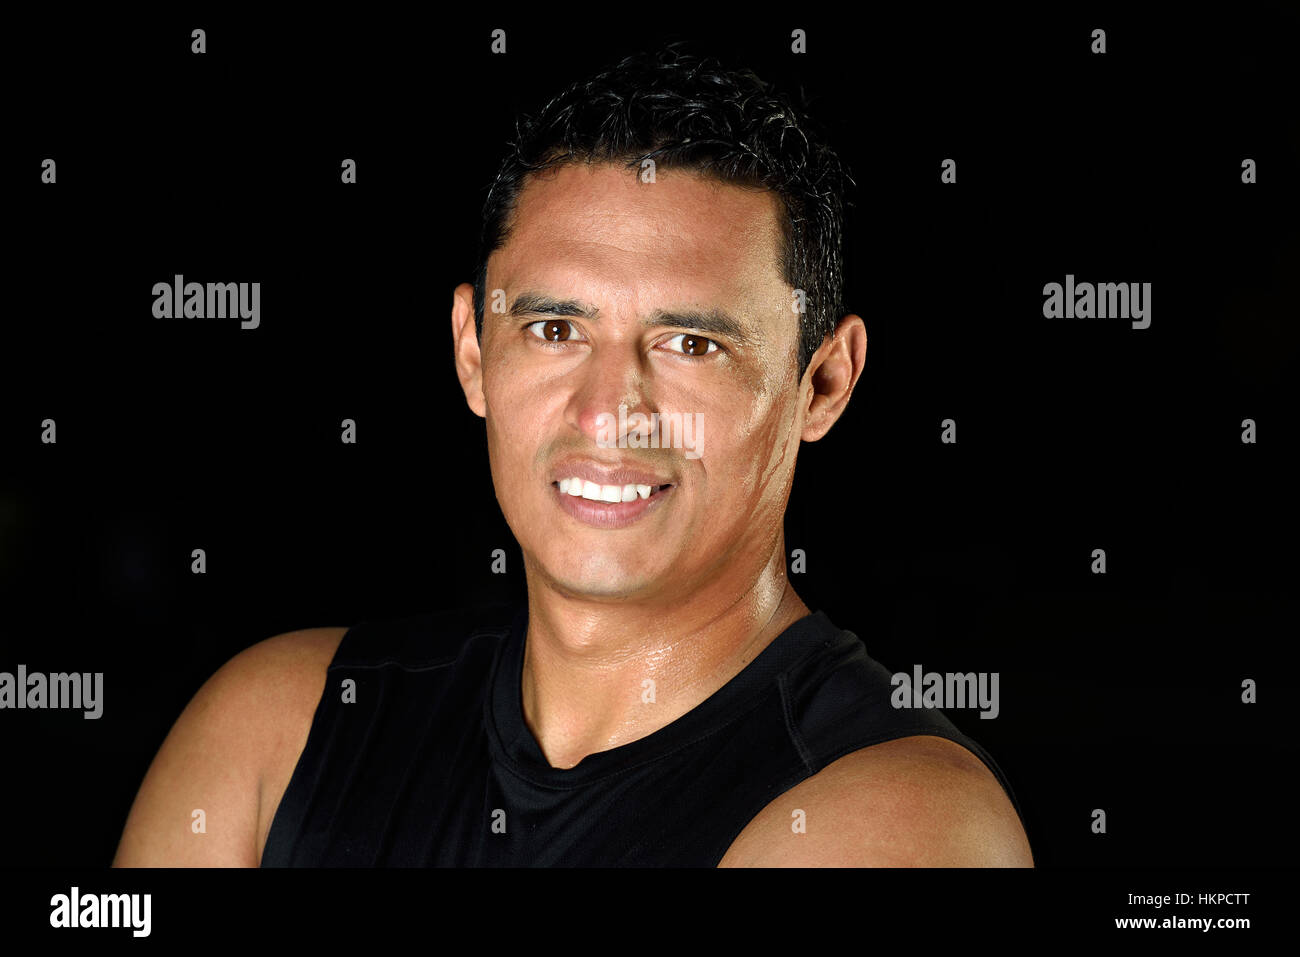 Sport-gesunder Mensch-Porträt auf schwarzem Hintergrund Stockfoto